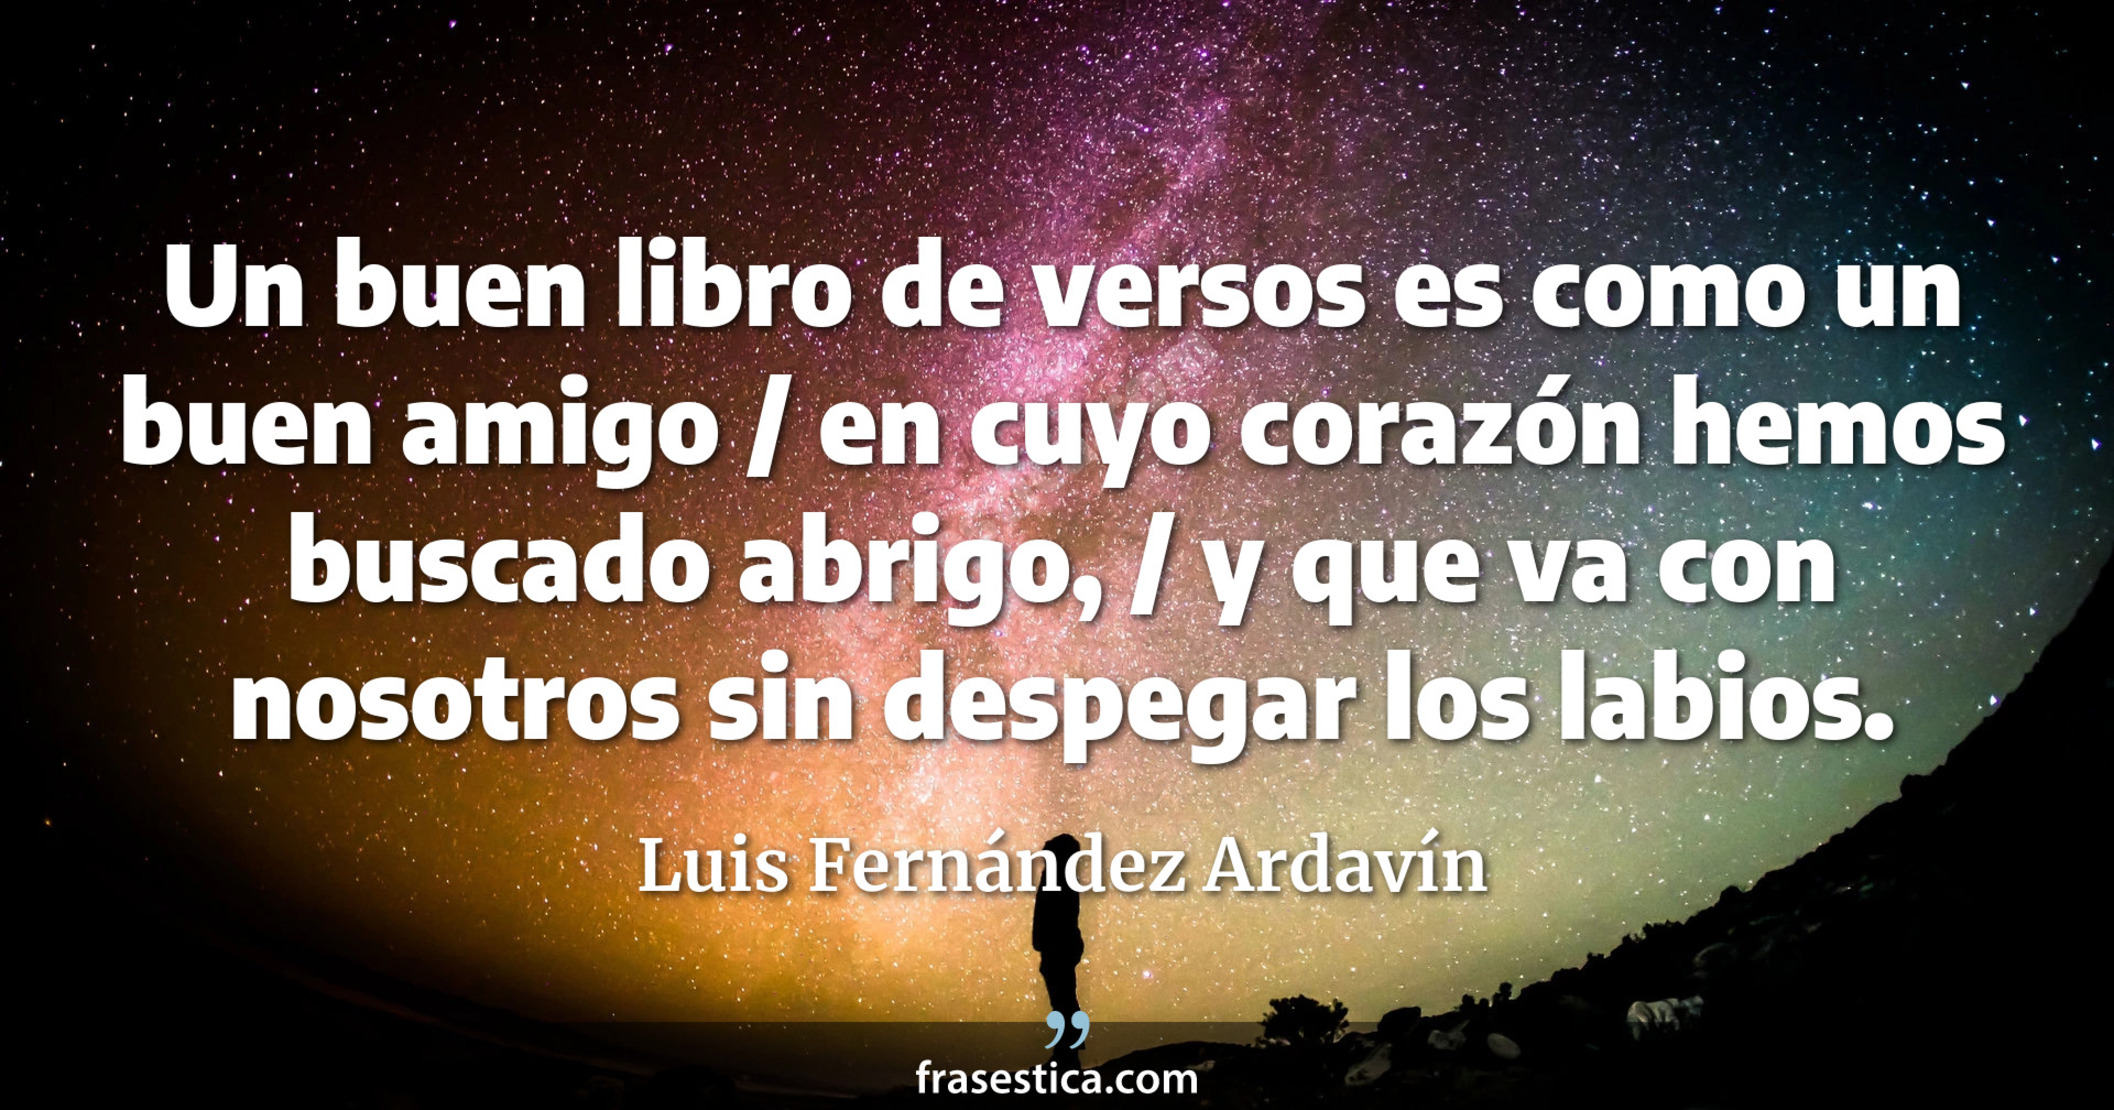 Un buen libro de versos es como un buen amigo / en cuyo corazón hemos buscado abrigo, / y que va con nosotros sin despegar los labios. - Luis Fernández Ardavín